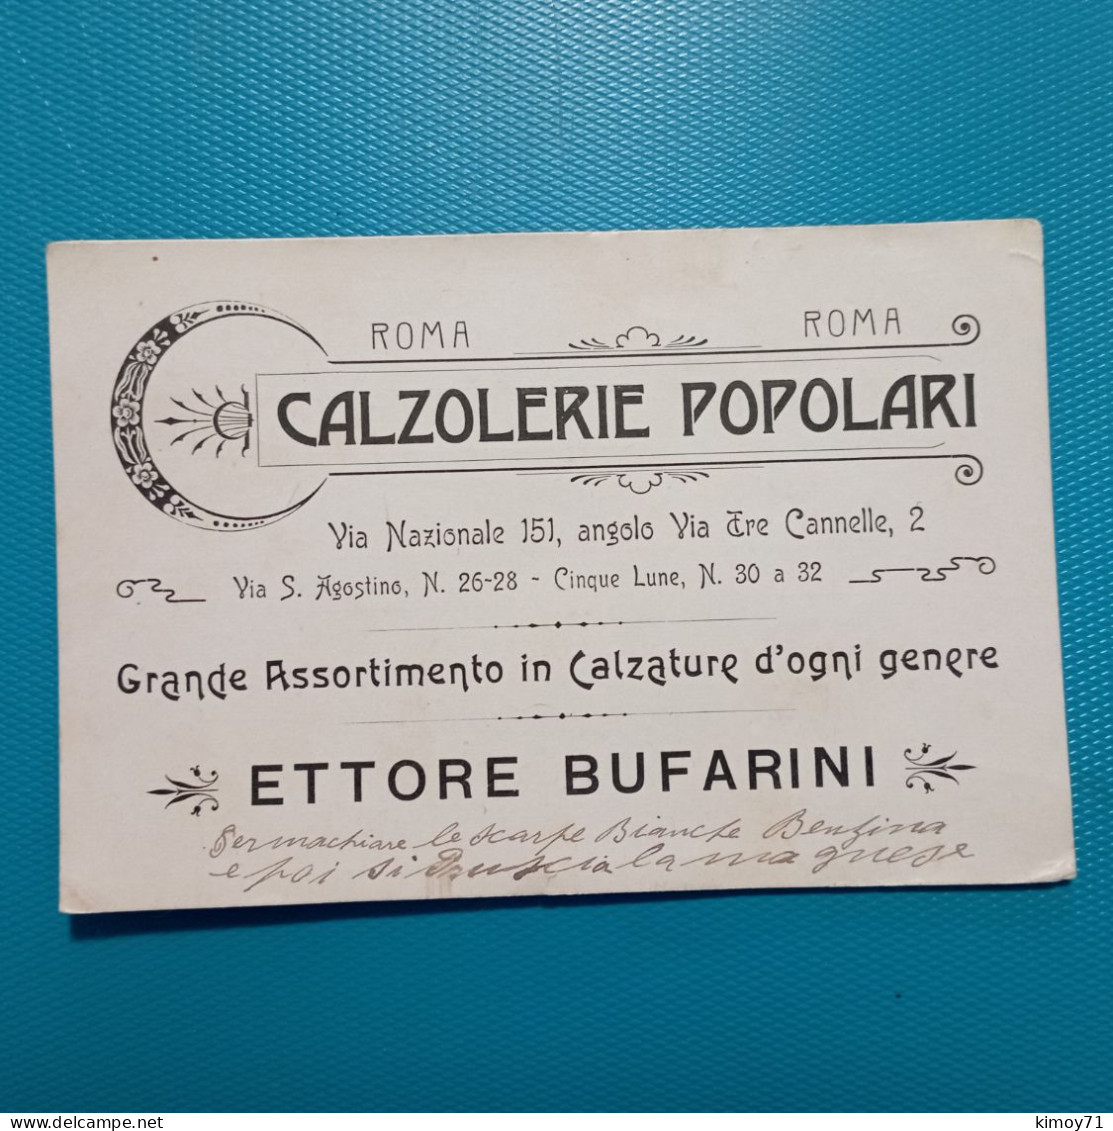 Cartolina Calzolerie Popolari Roma. - Pubblicitari